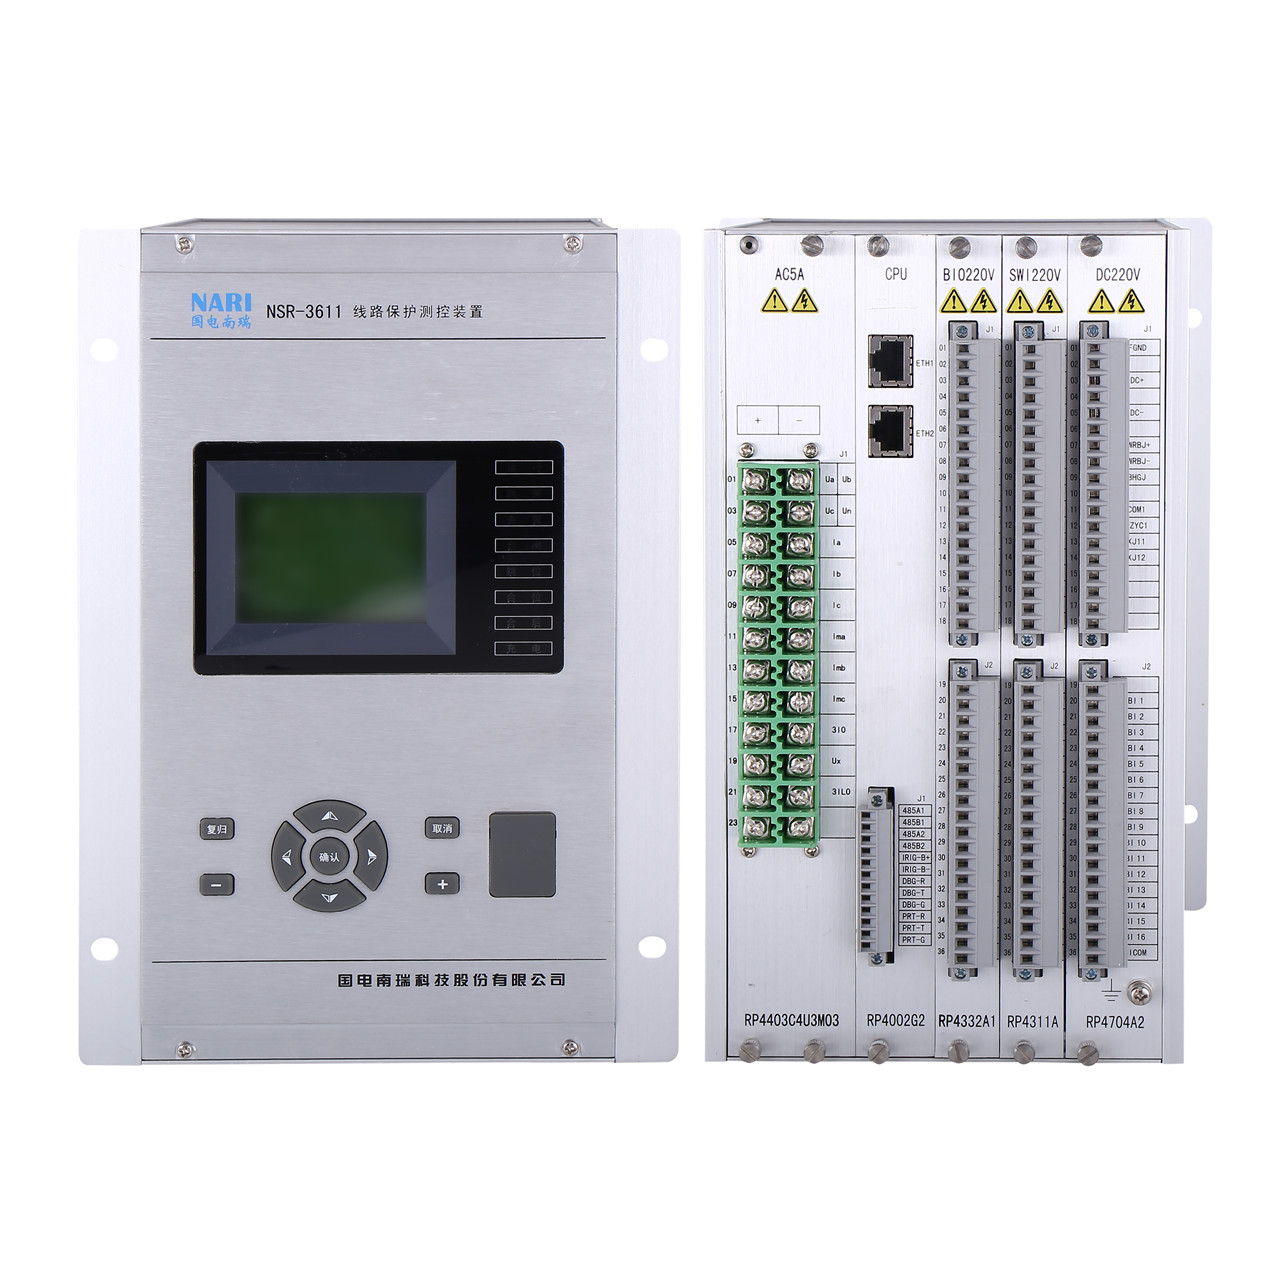 国电南瑞NS3000-S分布式变电站综合自动化系统后台软件